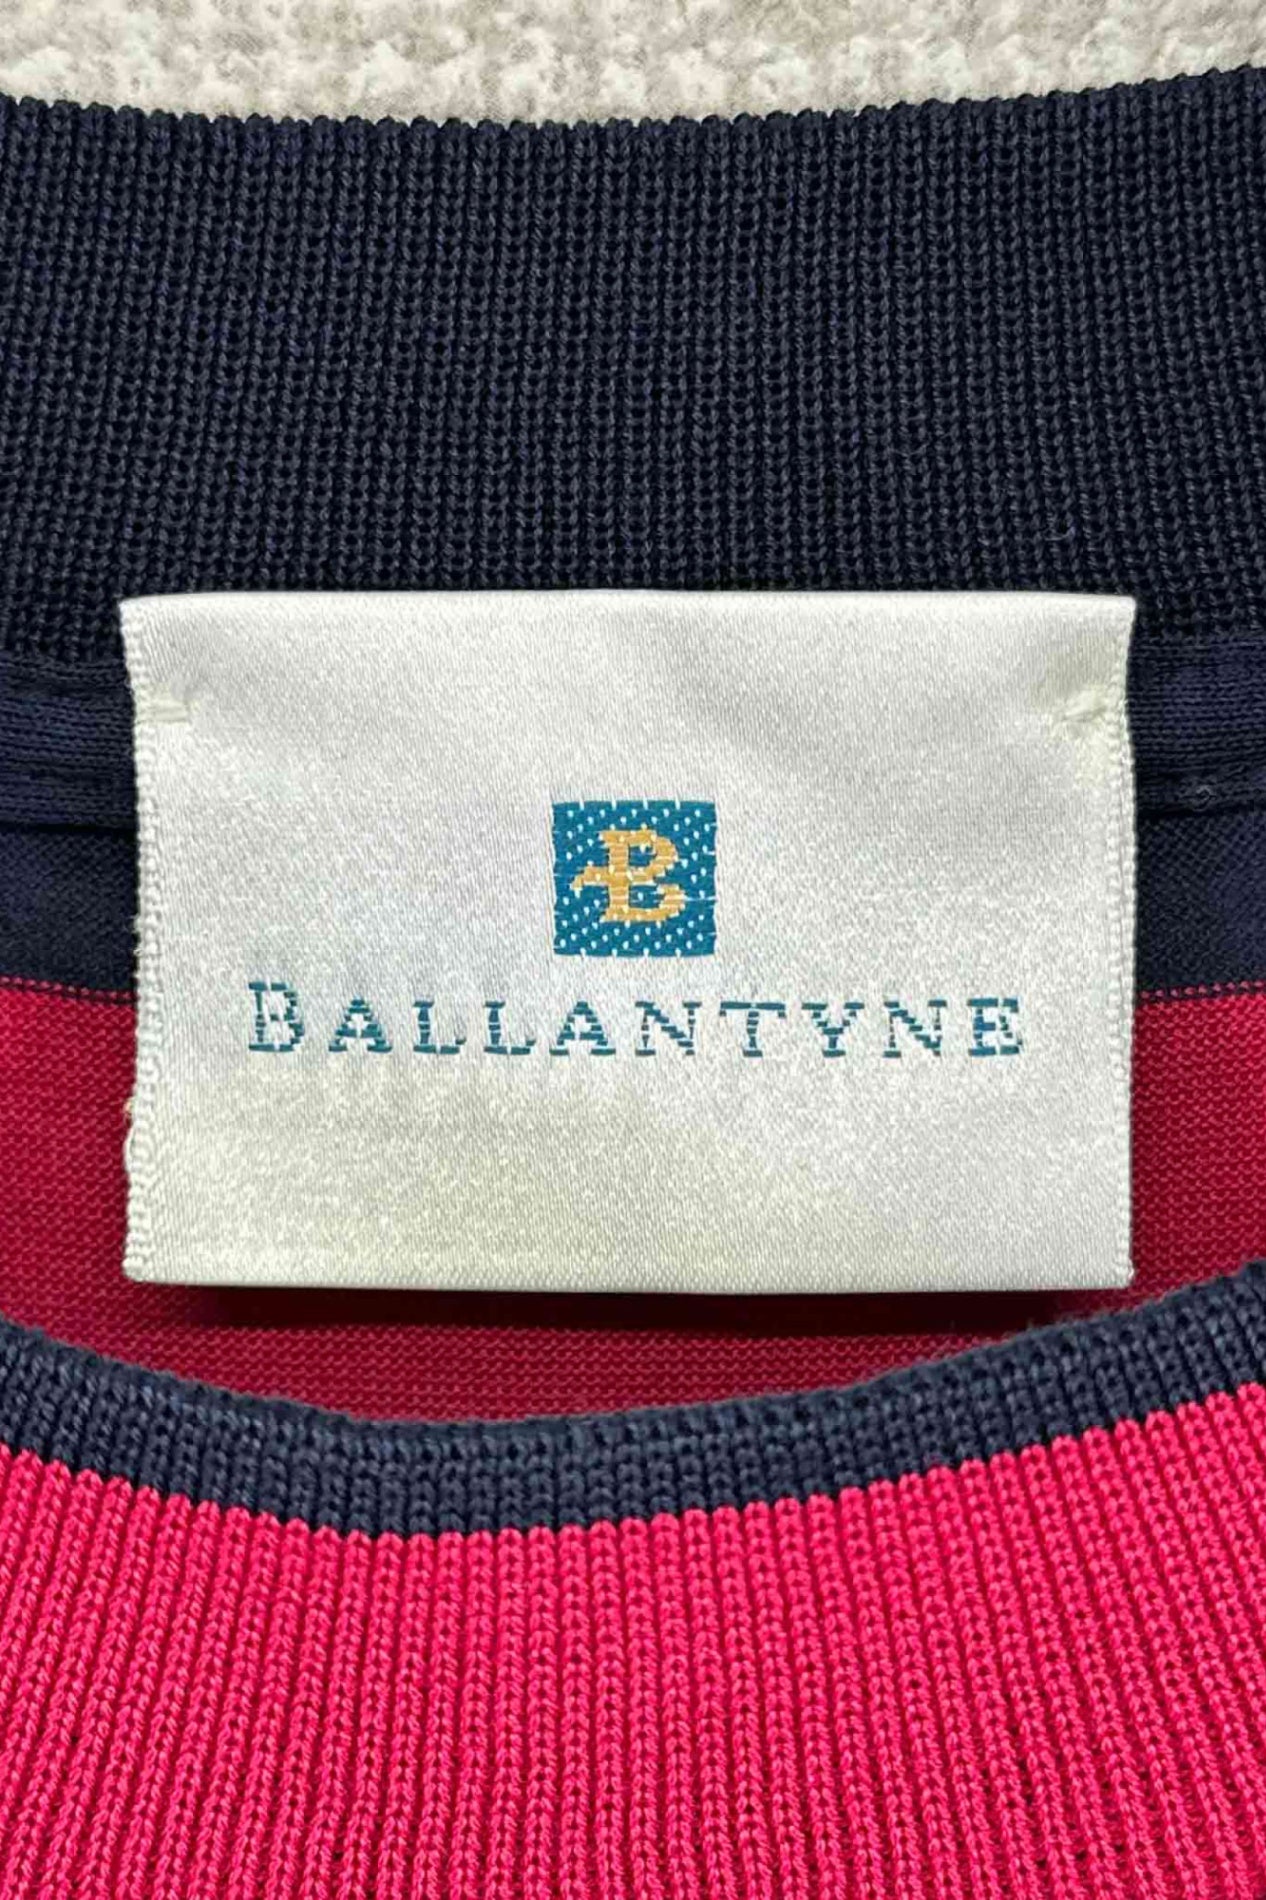 意大利制造 BALLANTYNE 边框 T 恤